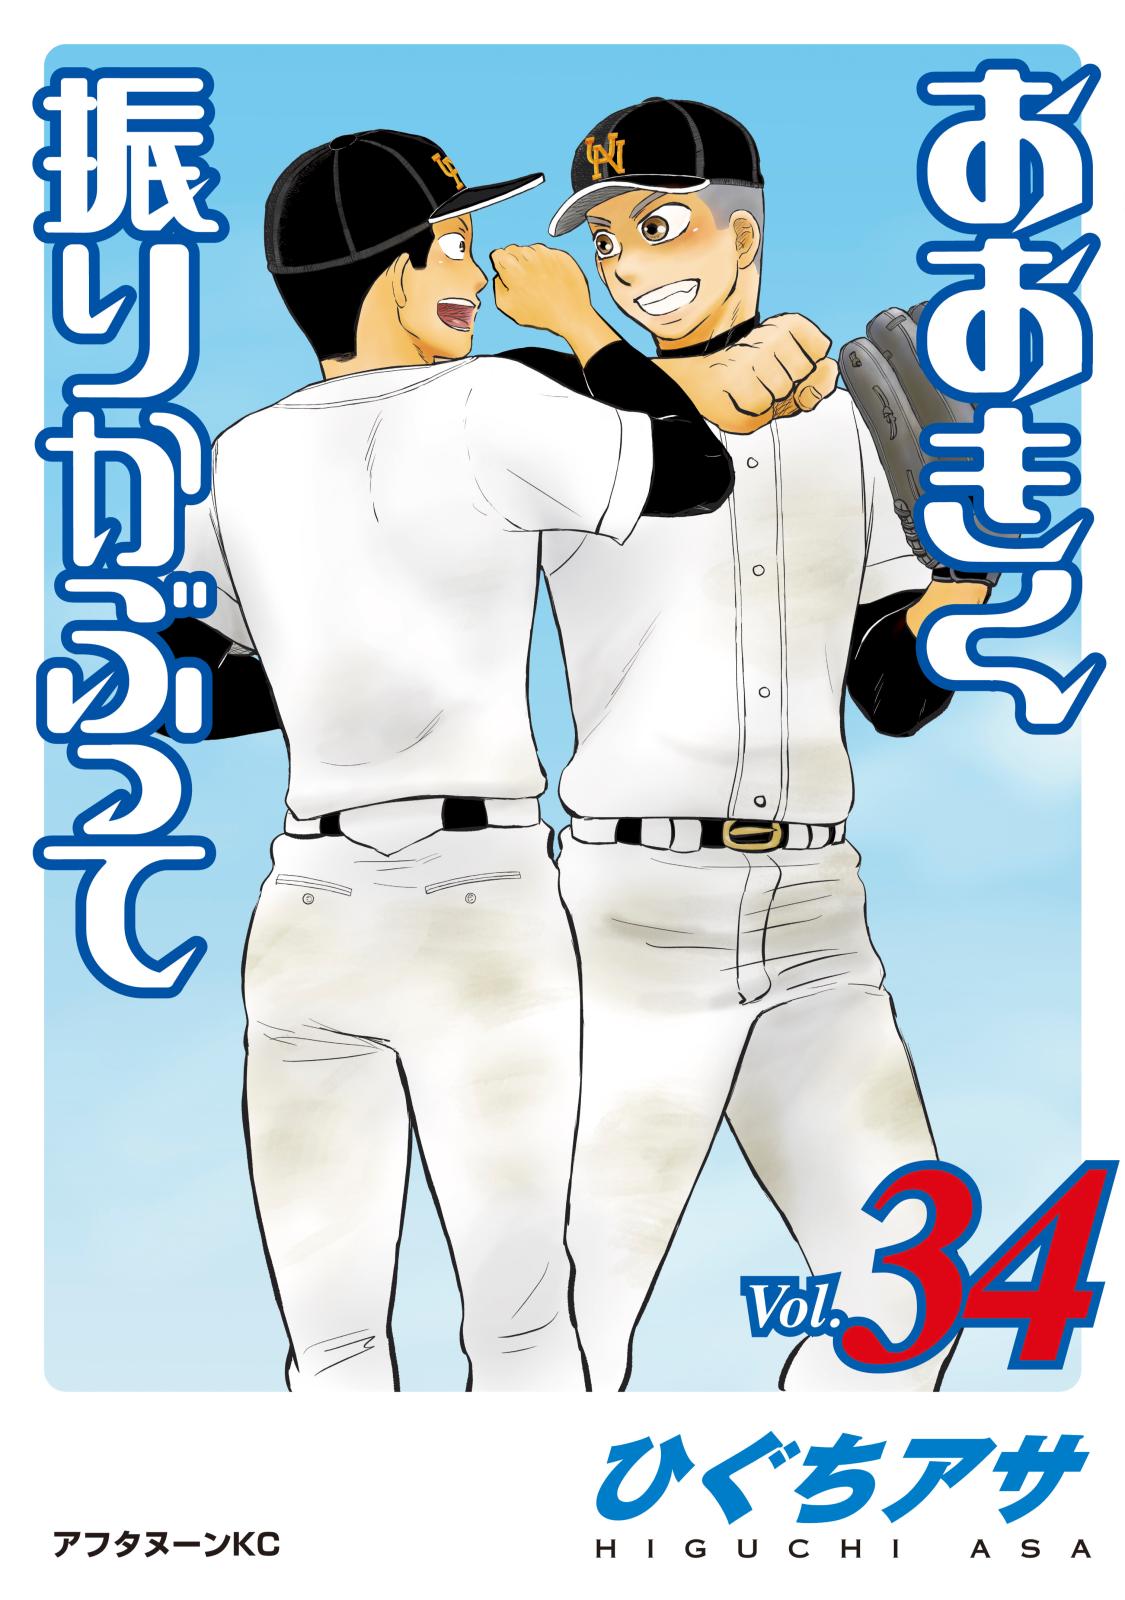 甲子園100週年 高校野球をテーマにした本当に面白い漫画3選 Music Jpニュース